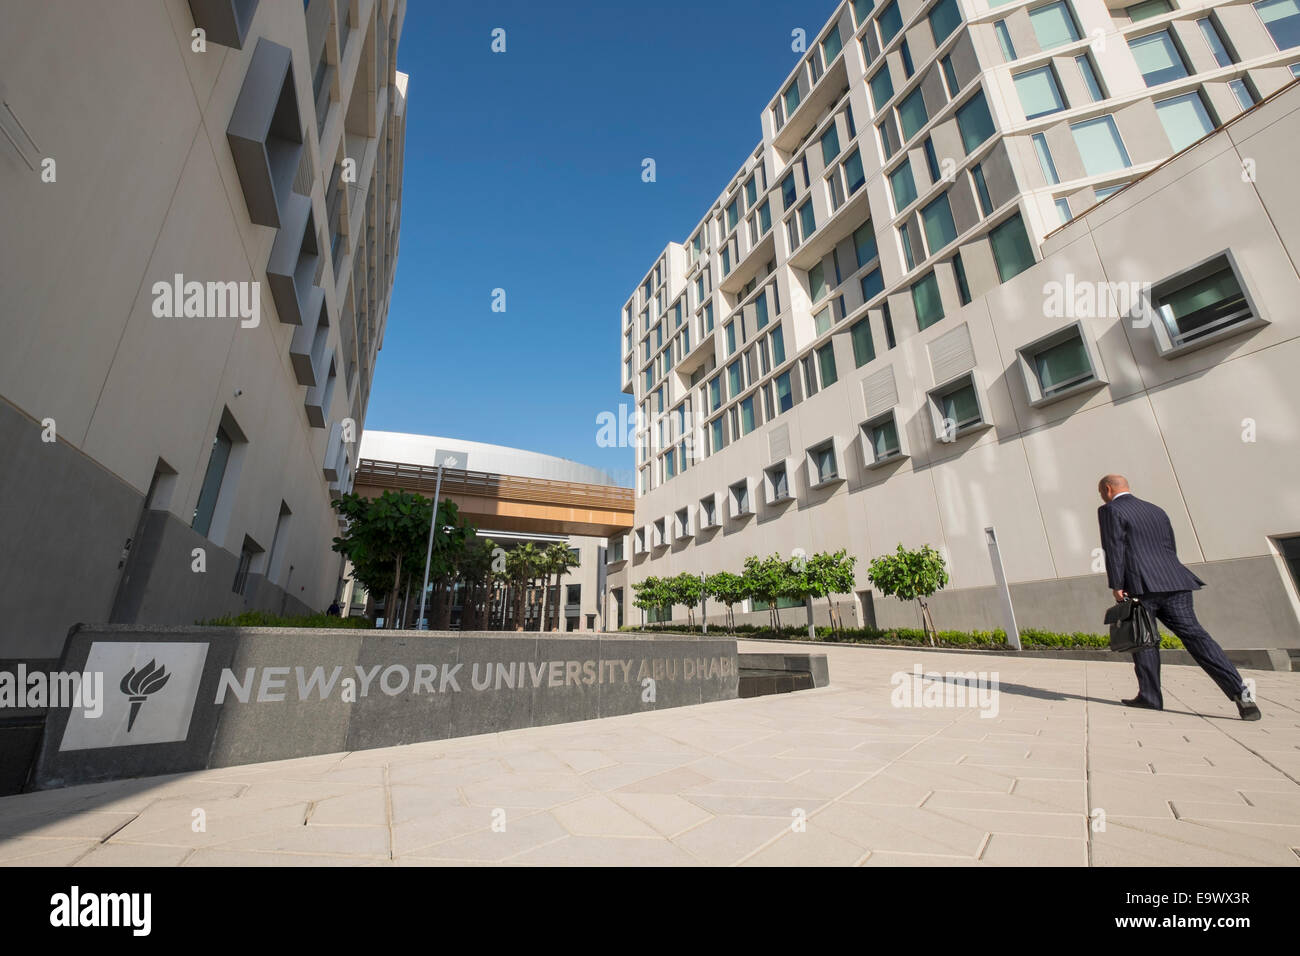 New Abu Dhabi campus of New York University (NYU) on Saadiyat Island in United Arab Emirates Stock Photo